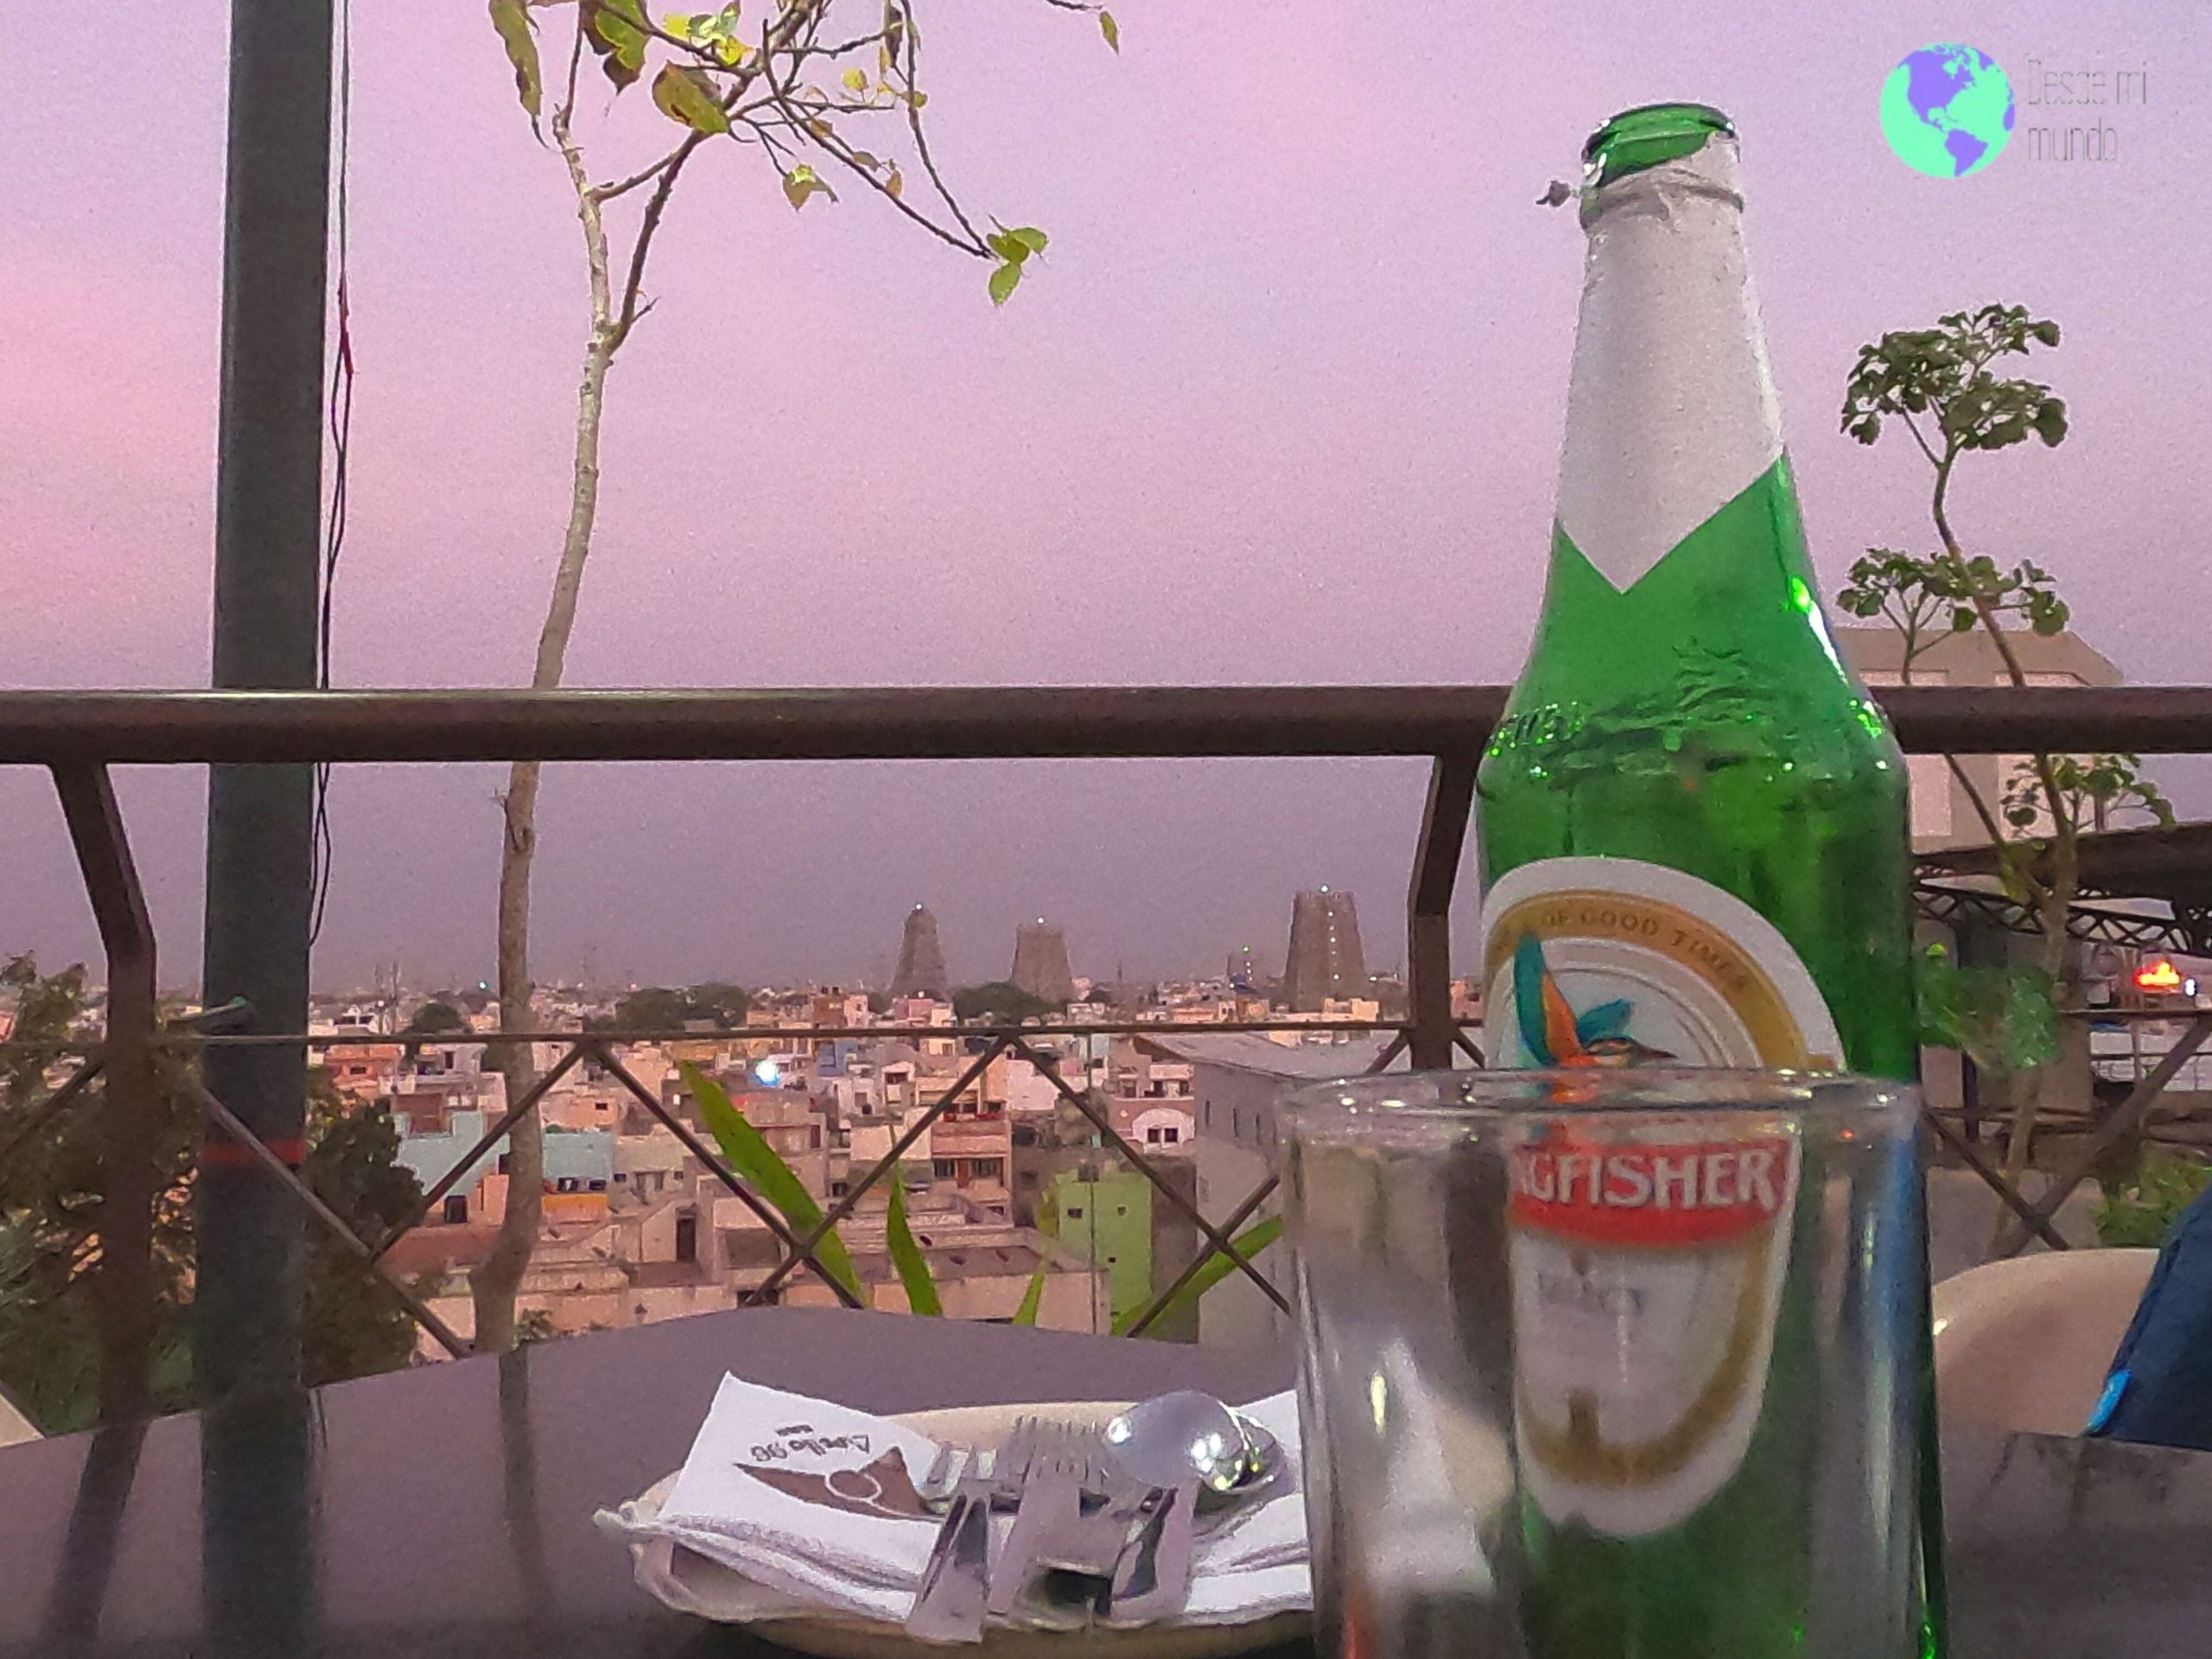 Atardecer en terraza con cerveza - Madurai - desde mi mundo blog de viajes